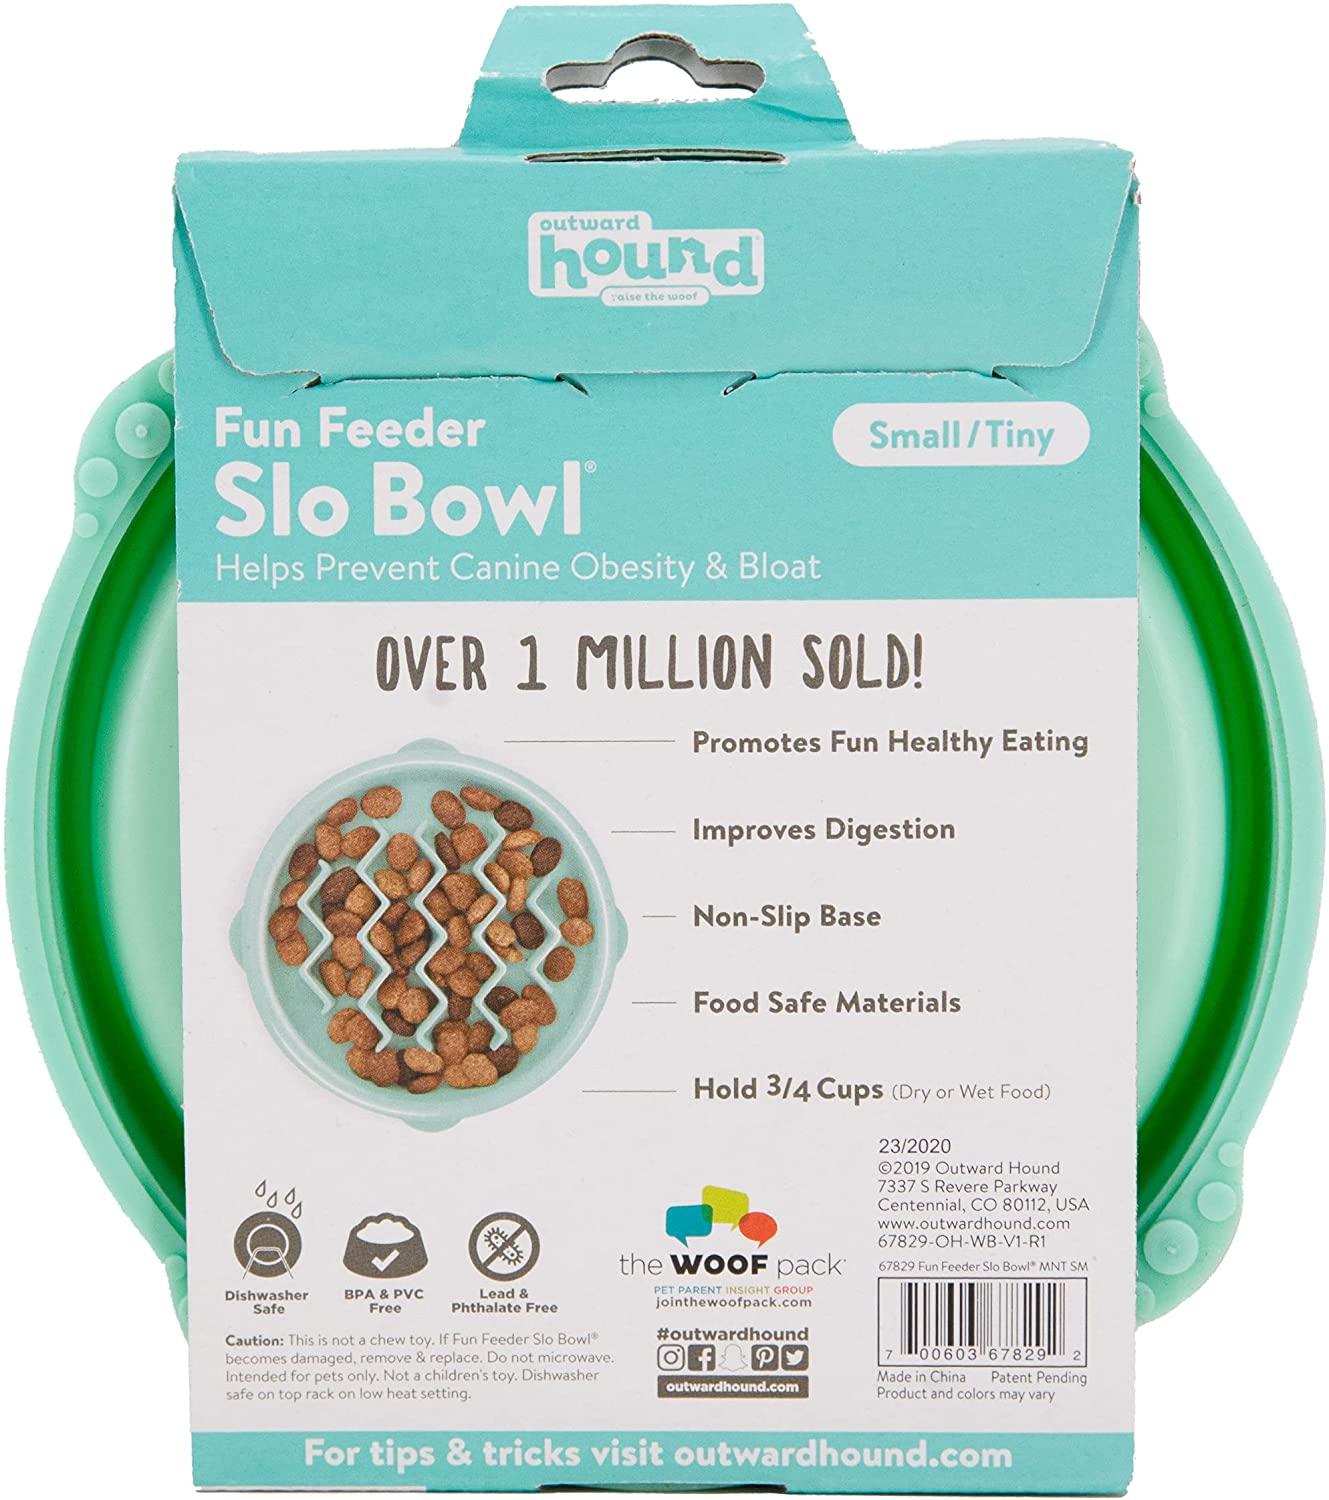 Outward Hound Fun Feeder Slo Bowl - Slow Feeder Dog Bowl (5 in